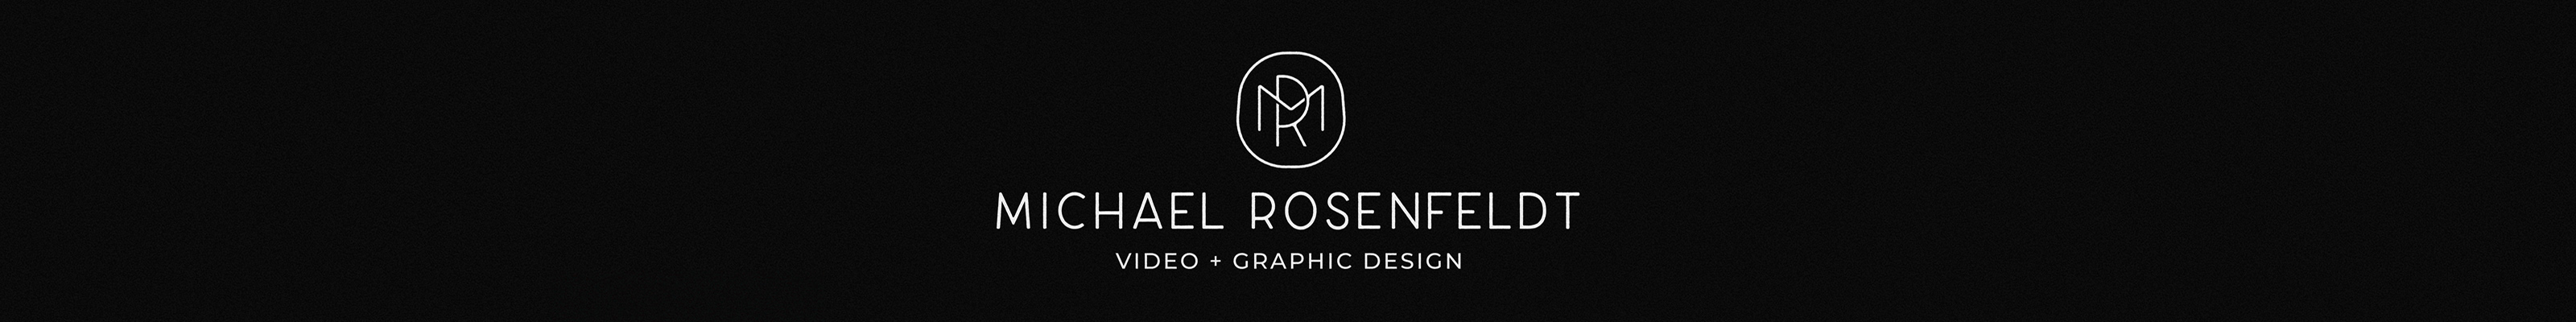 Michael Rosenfeldt's profile banner